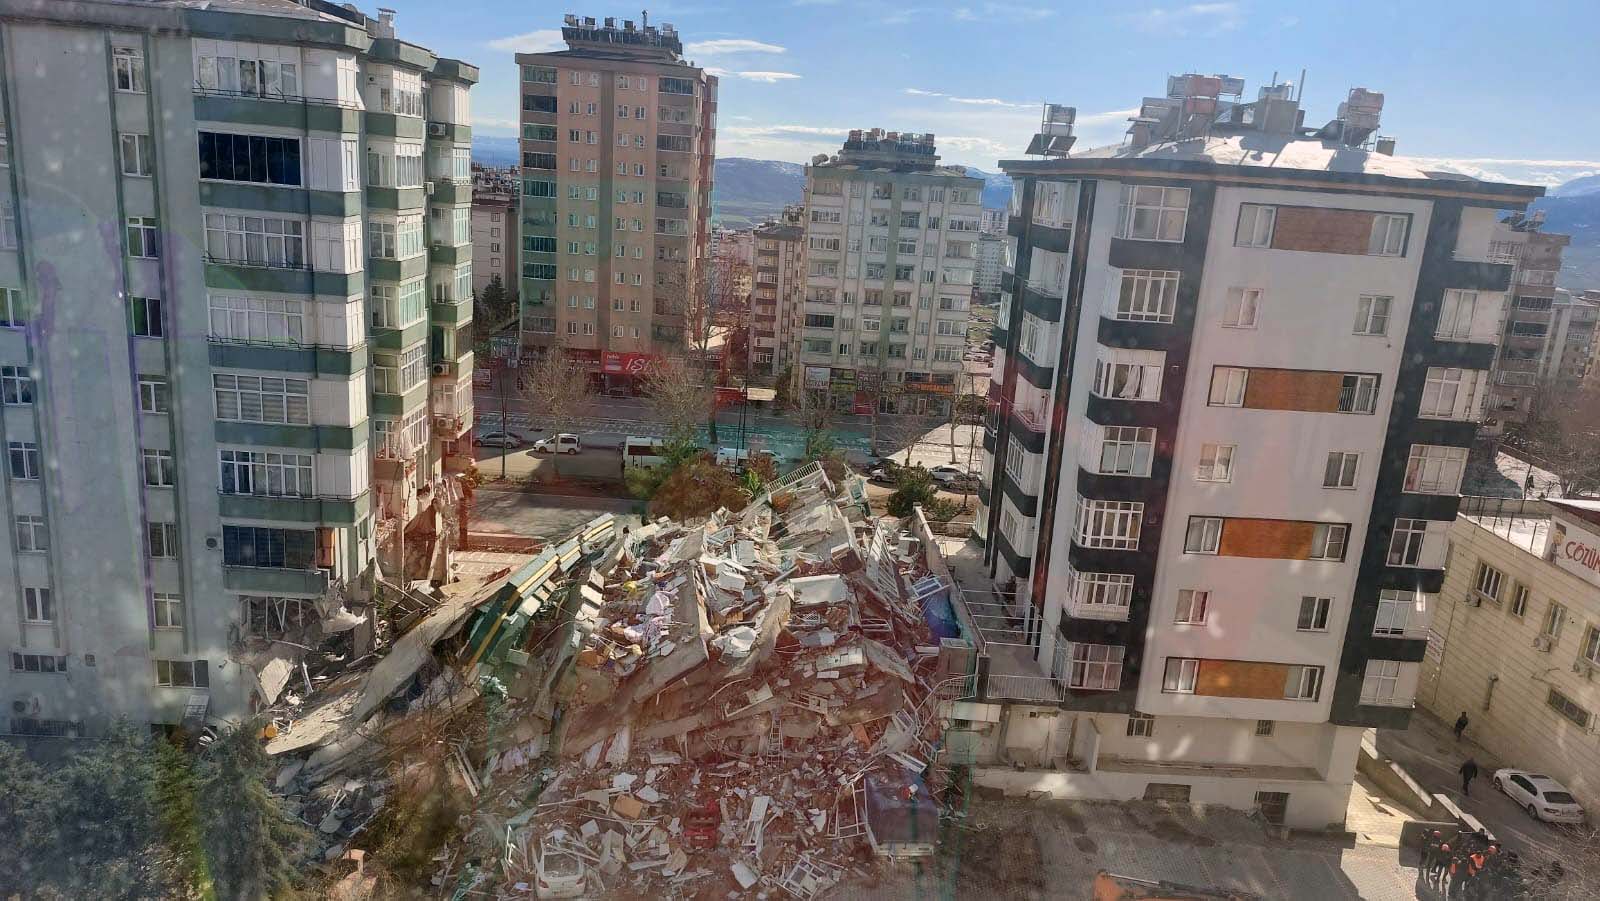 Depremde 19 kişinin öldüğü binada usulsüzlüğü, hem mahkeme hem belediye tespit etmiş ancak adım atılmamış